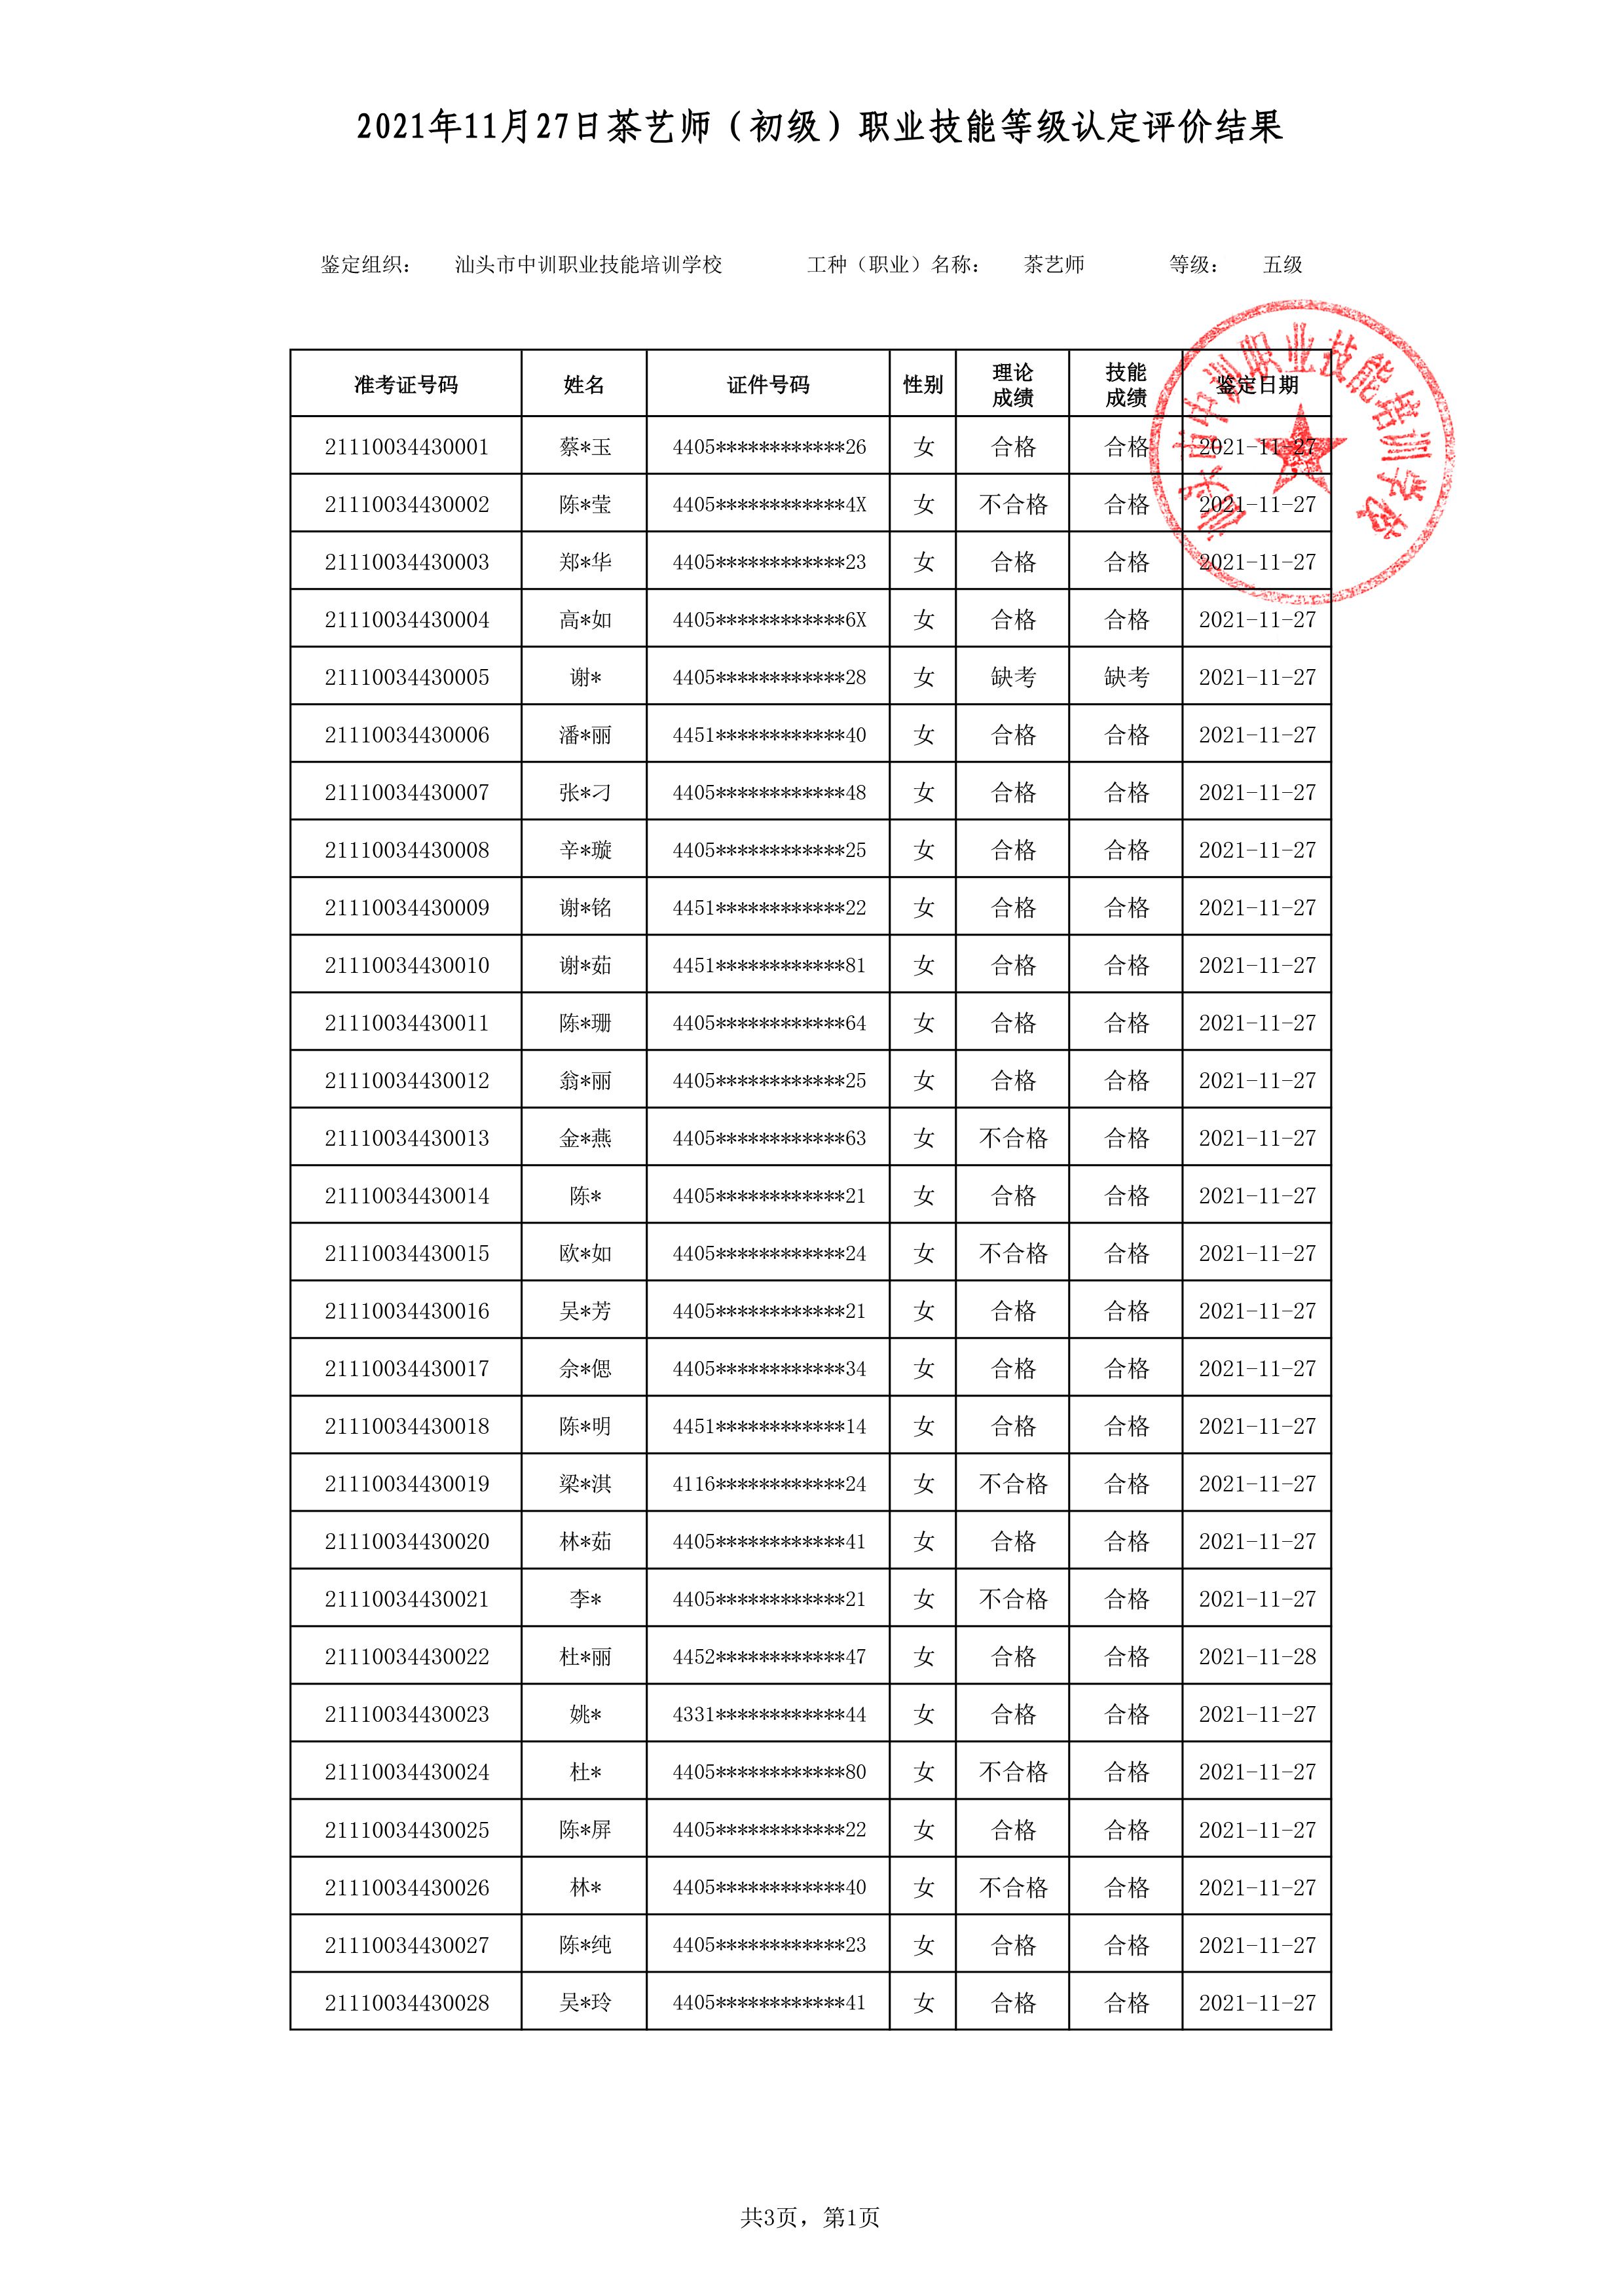 21-11-27五级茶艺师考试鉴定名册表-1 副本.jpg